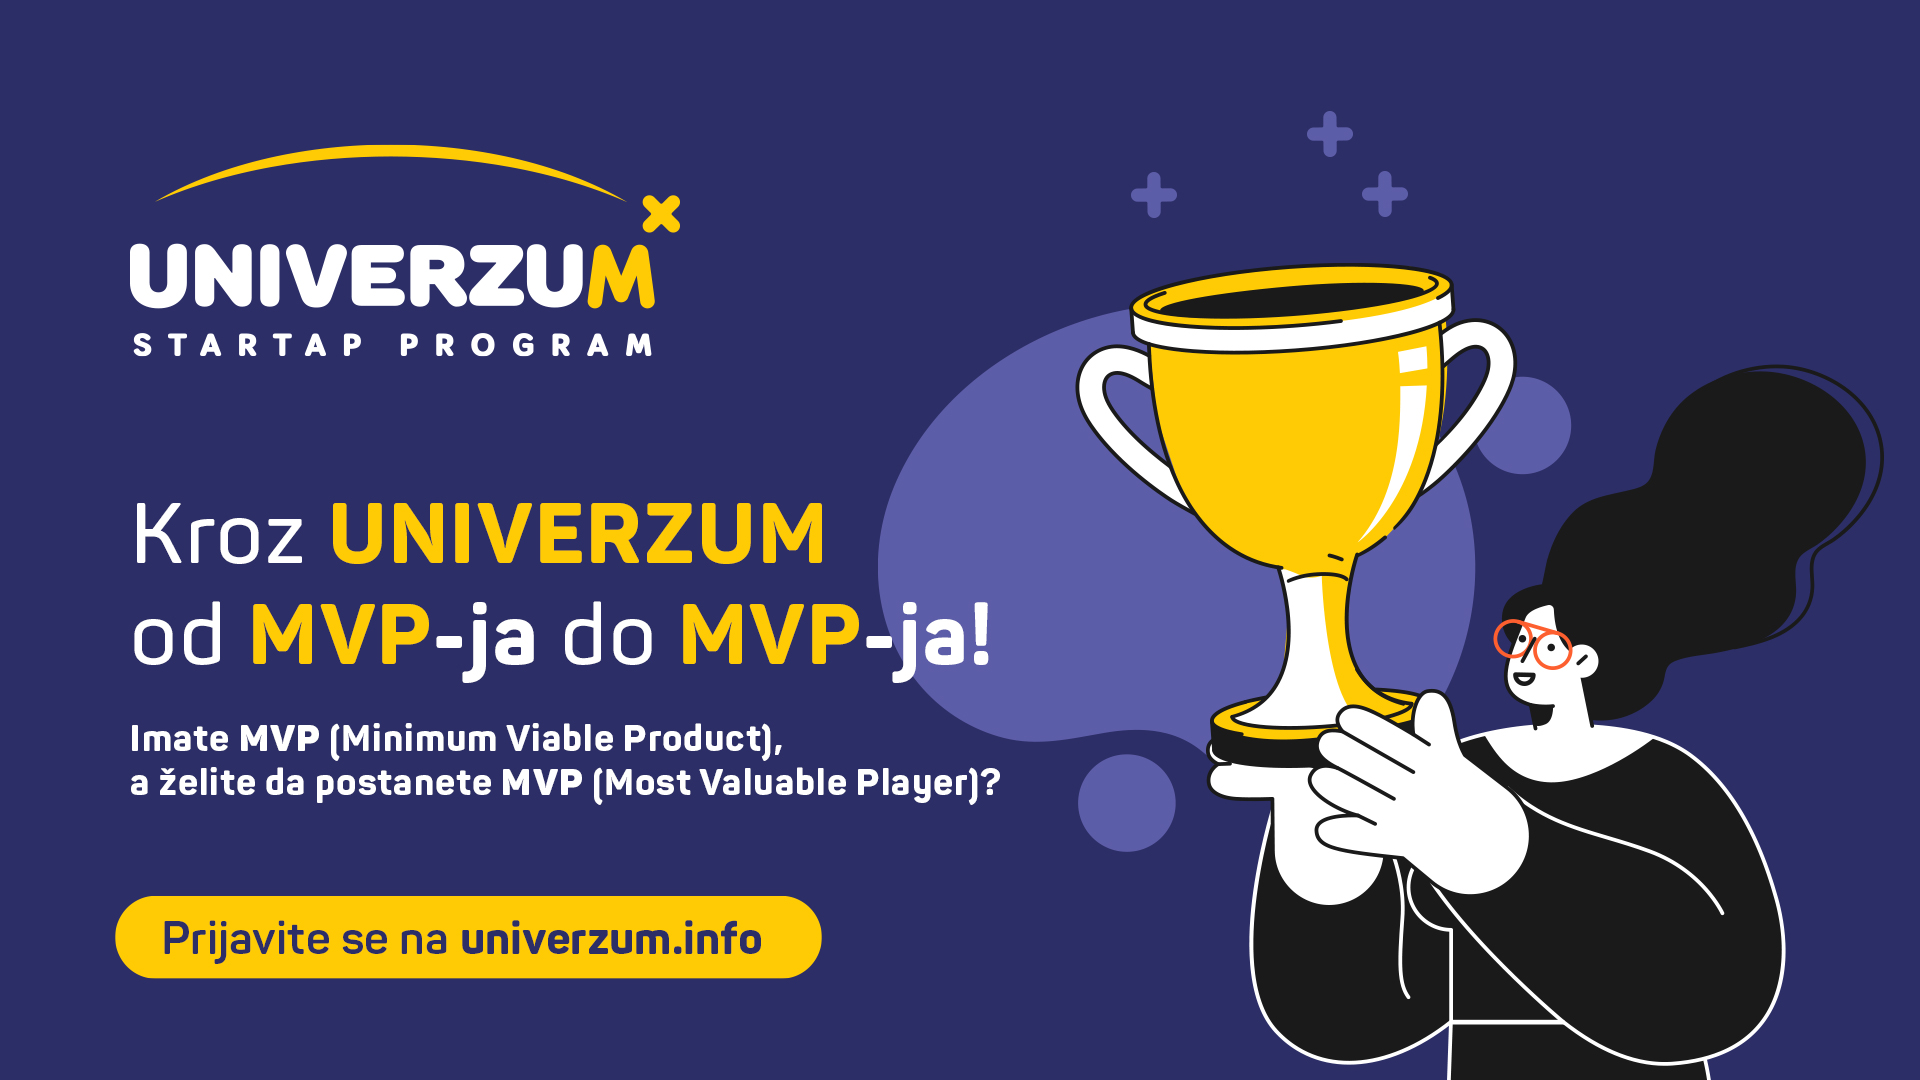 20.000 razloga da postanješ MVP univerzuma: Kompanija Mozzart pokrenula novi ciklus startap programa Univerzum